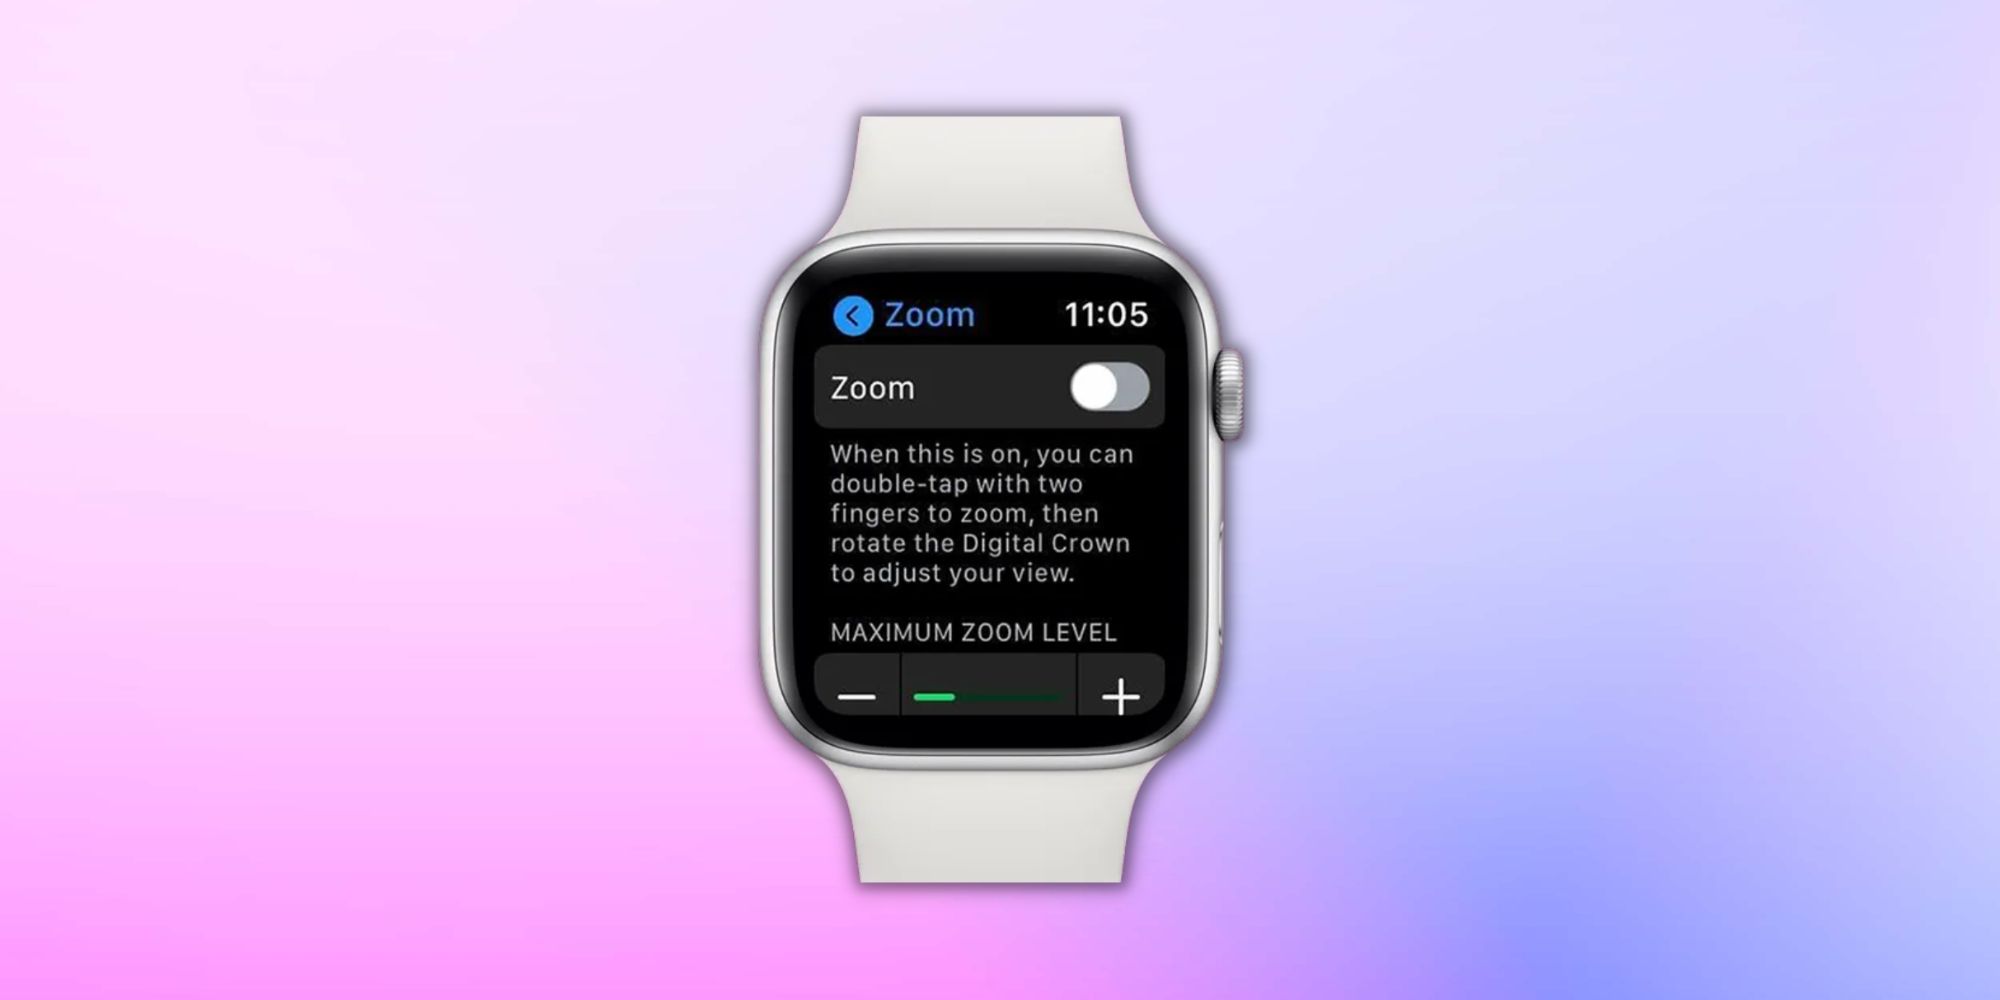 Bild einer Apple Watch mit der Bedienungshilfen-Zoomfunktion auf dem Bildschirm vor einem Hintergrund mit Farbverlauf